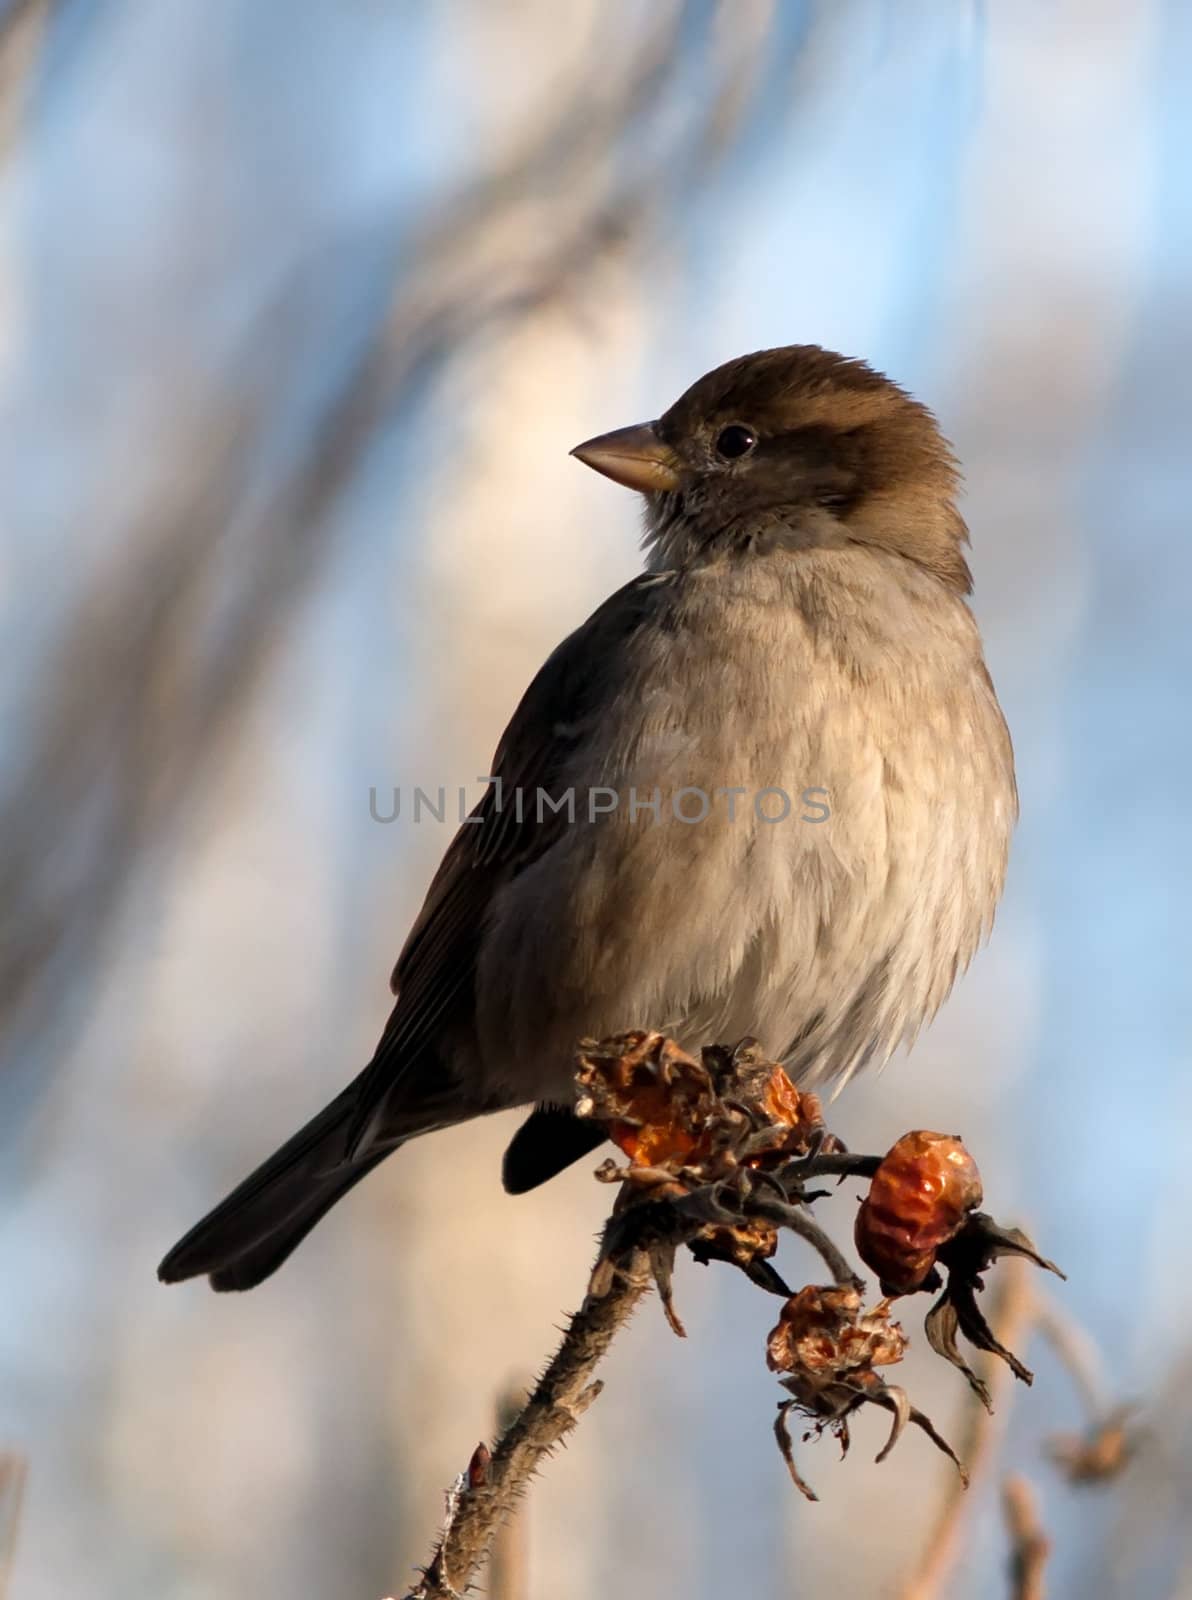 sparrow bird